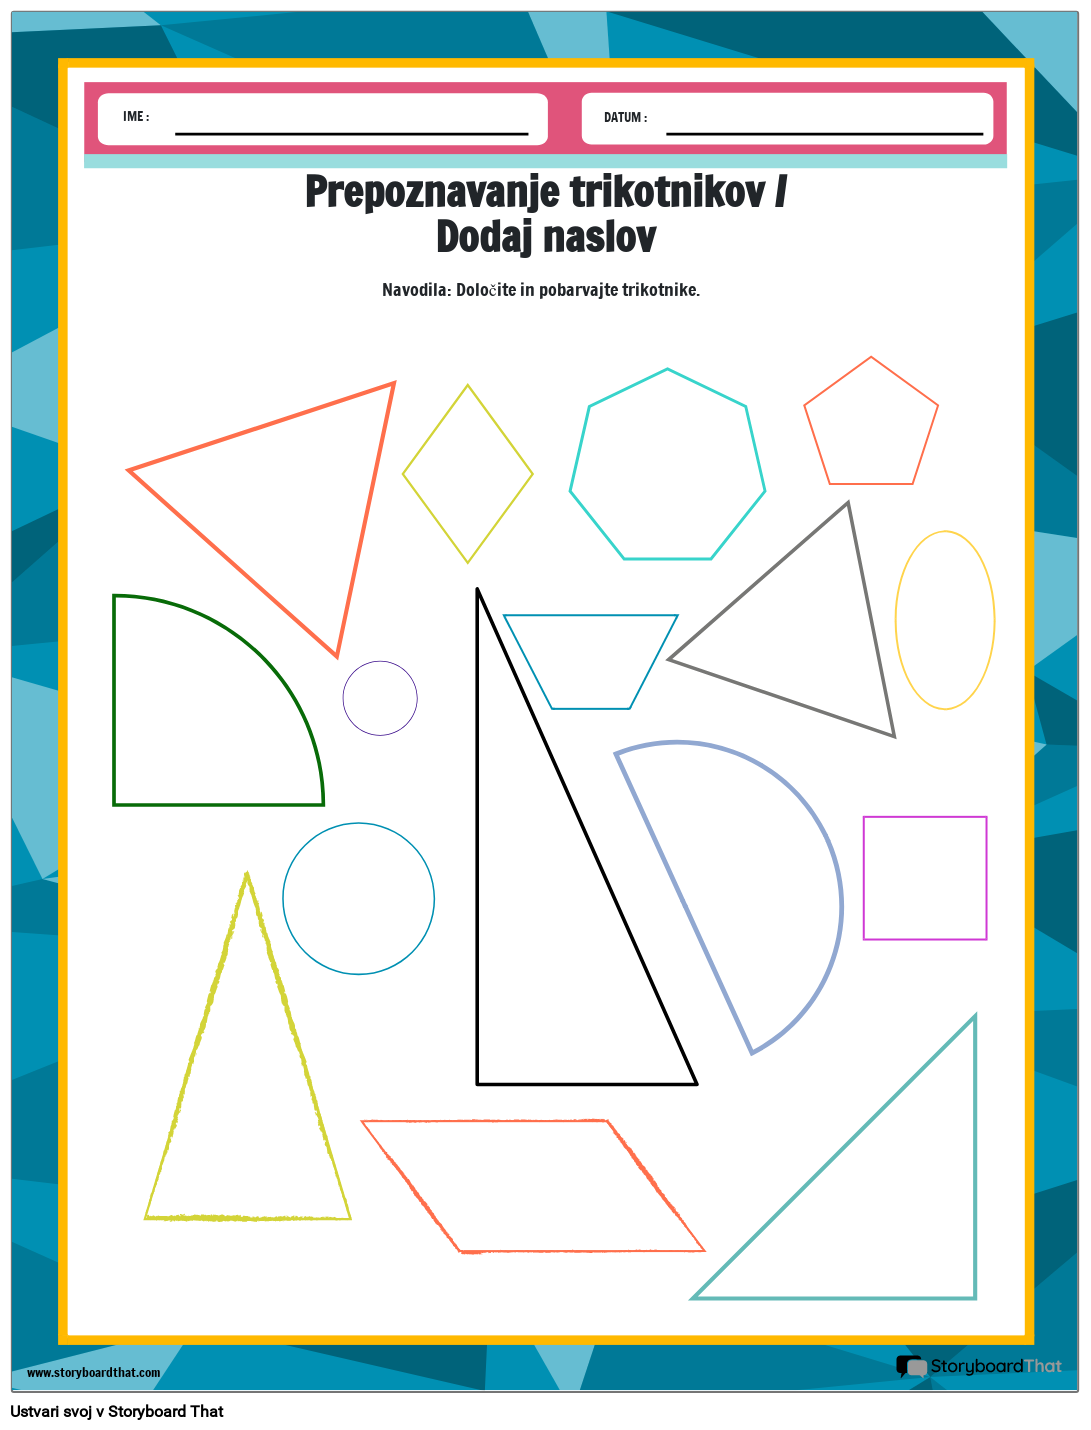 Delovni list za barvanje trikotnikov z različnimi oblikami